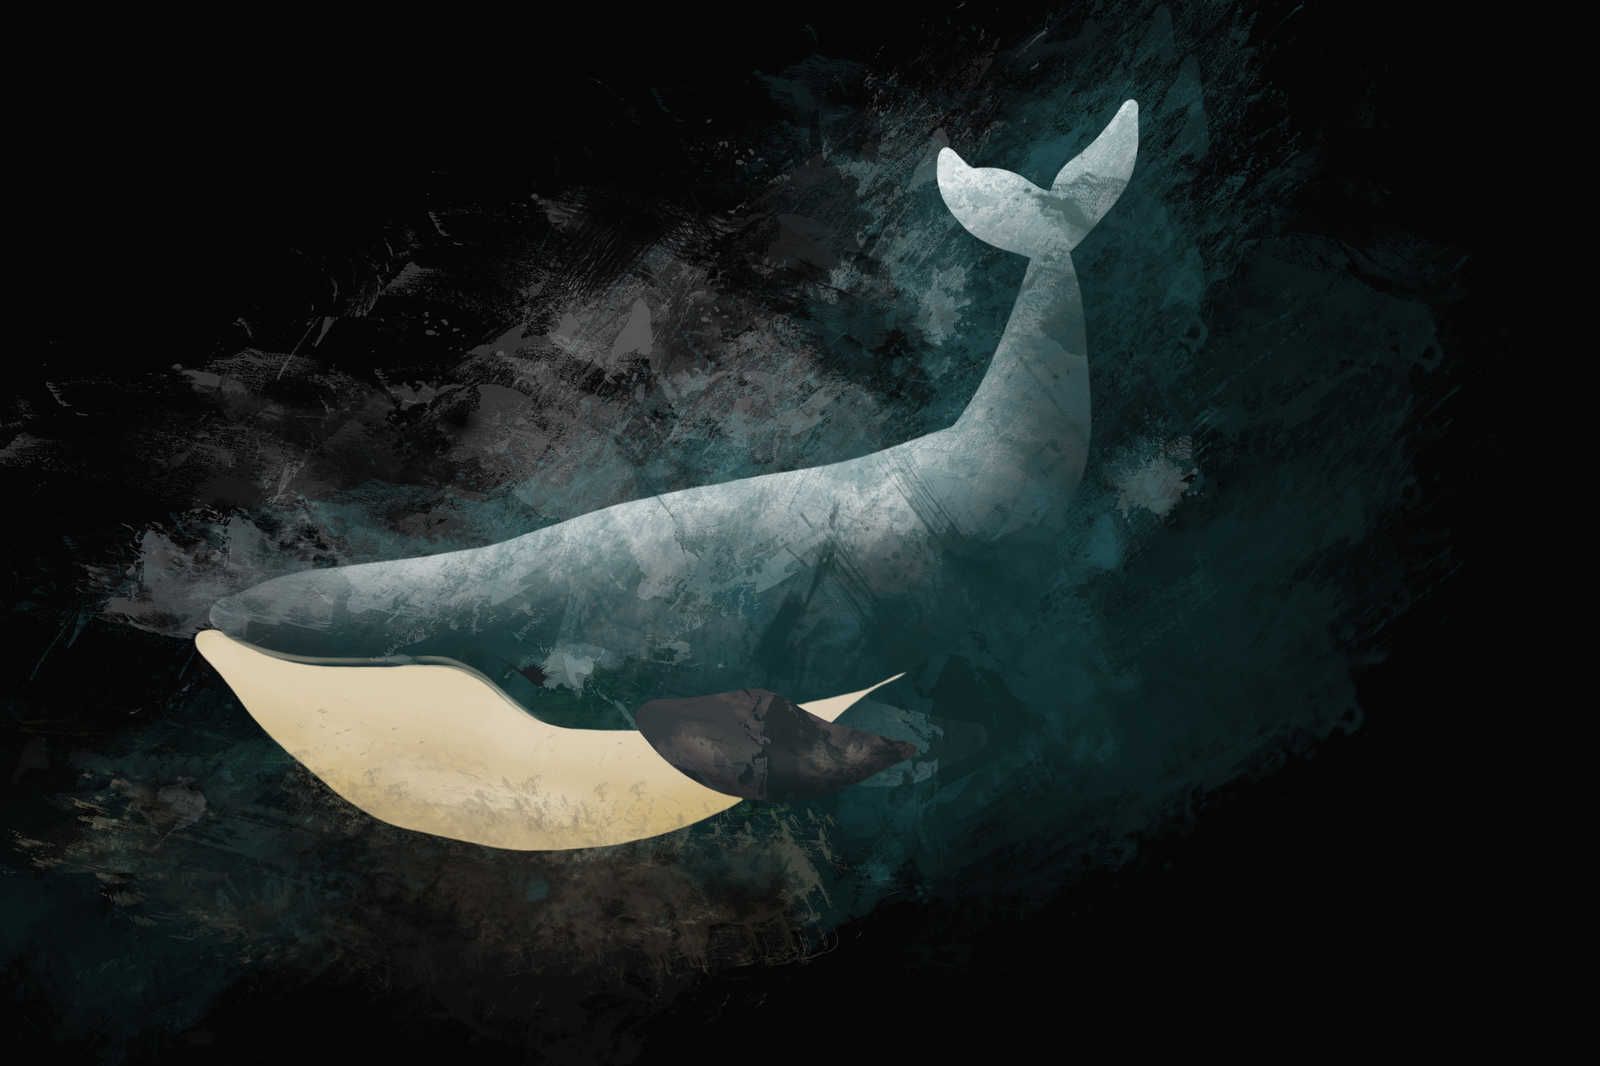             Zwart canvas schilderij met walvis in tekenontwerp - 0,90 m x 0,60 m
        